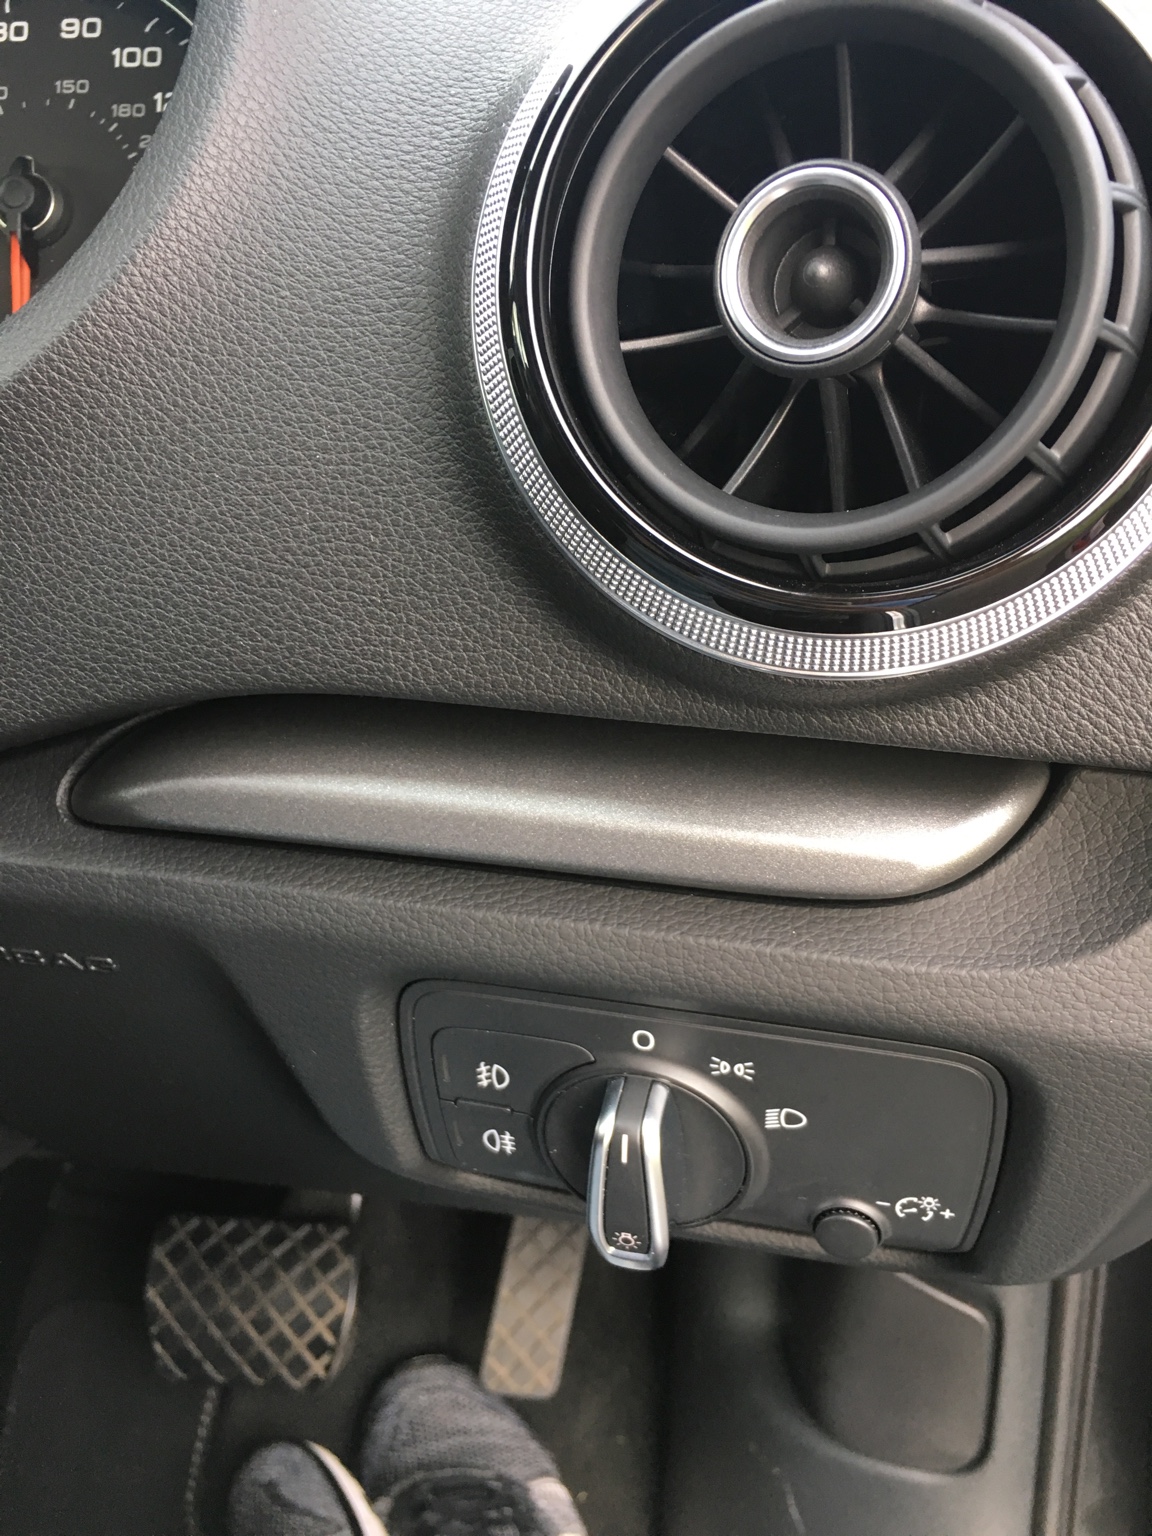 Insert volant chrome abîmer : Problèmes Intérieur - Forum Audi A3 8P - 8V